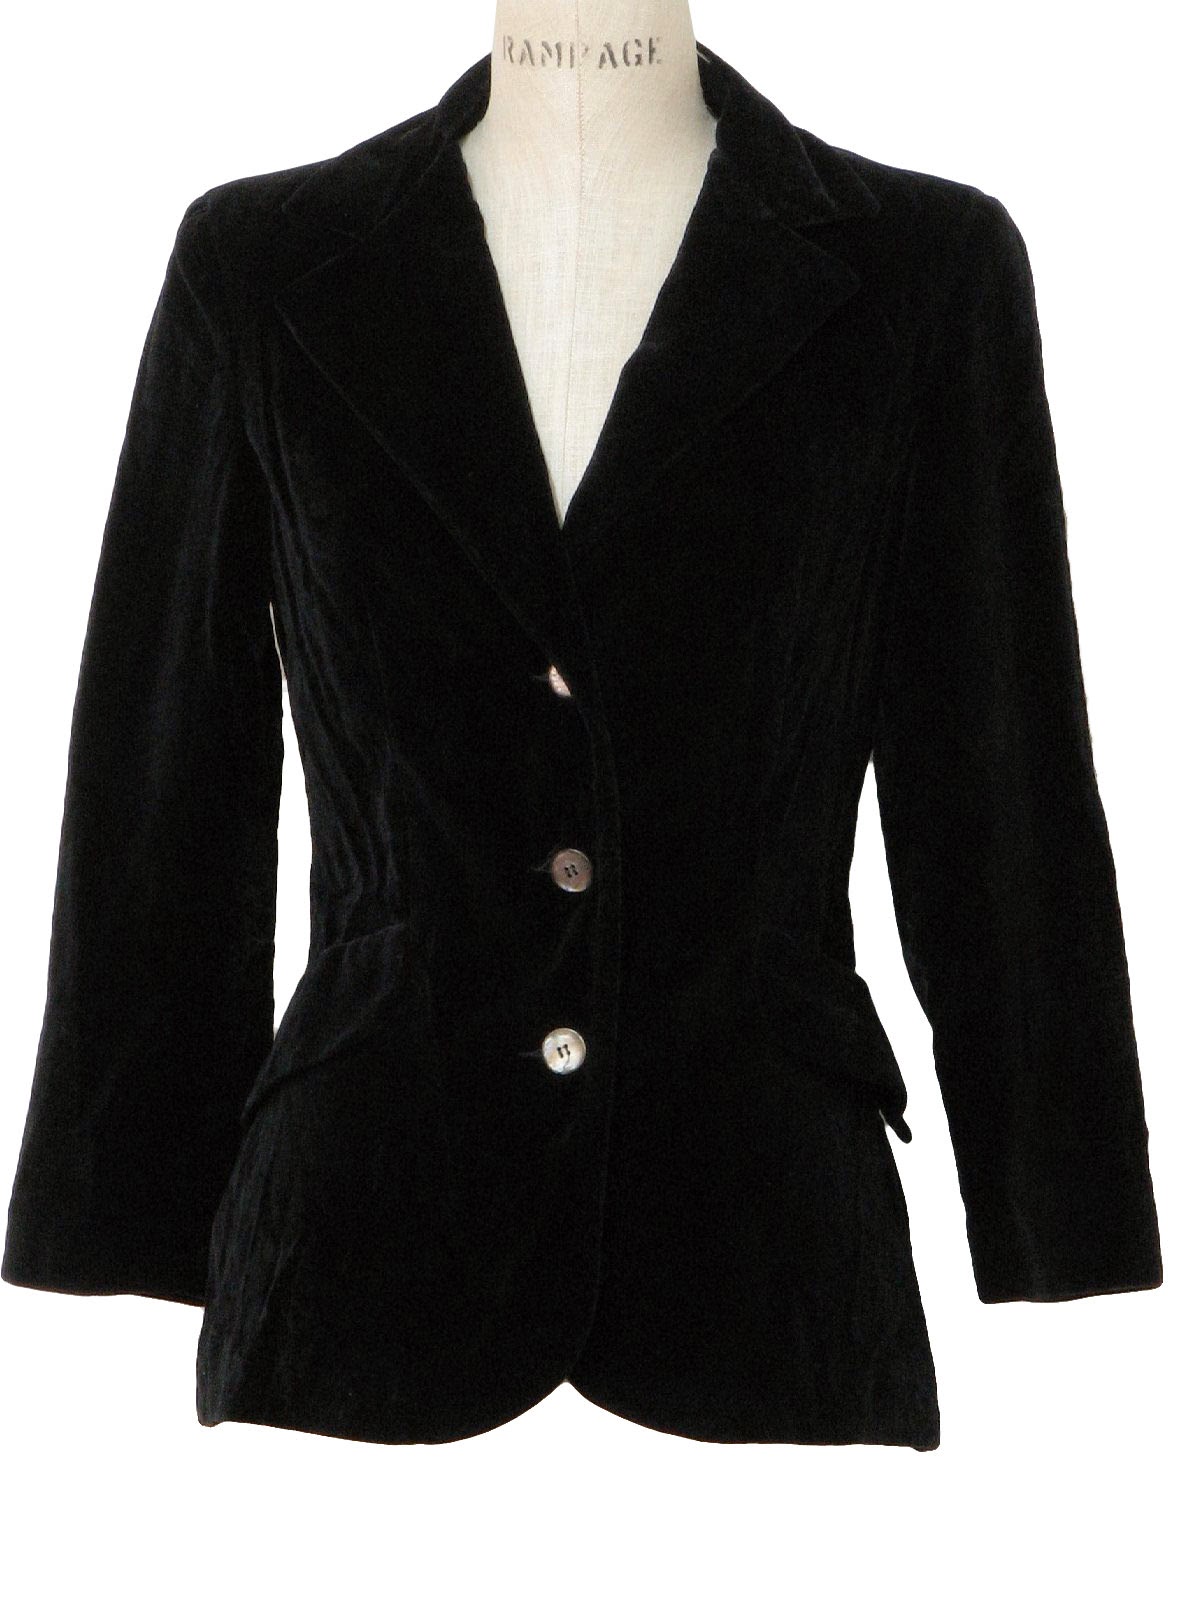 black blazer for women